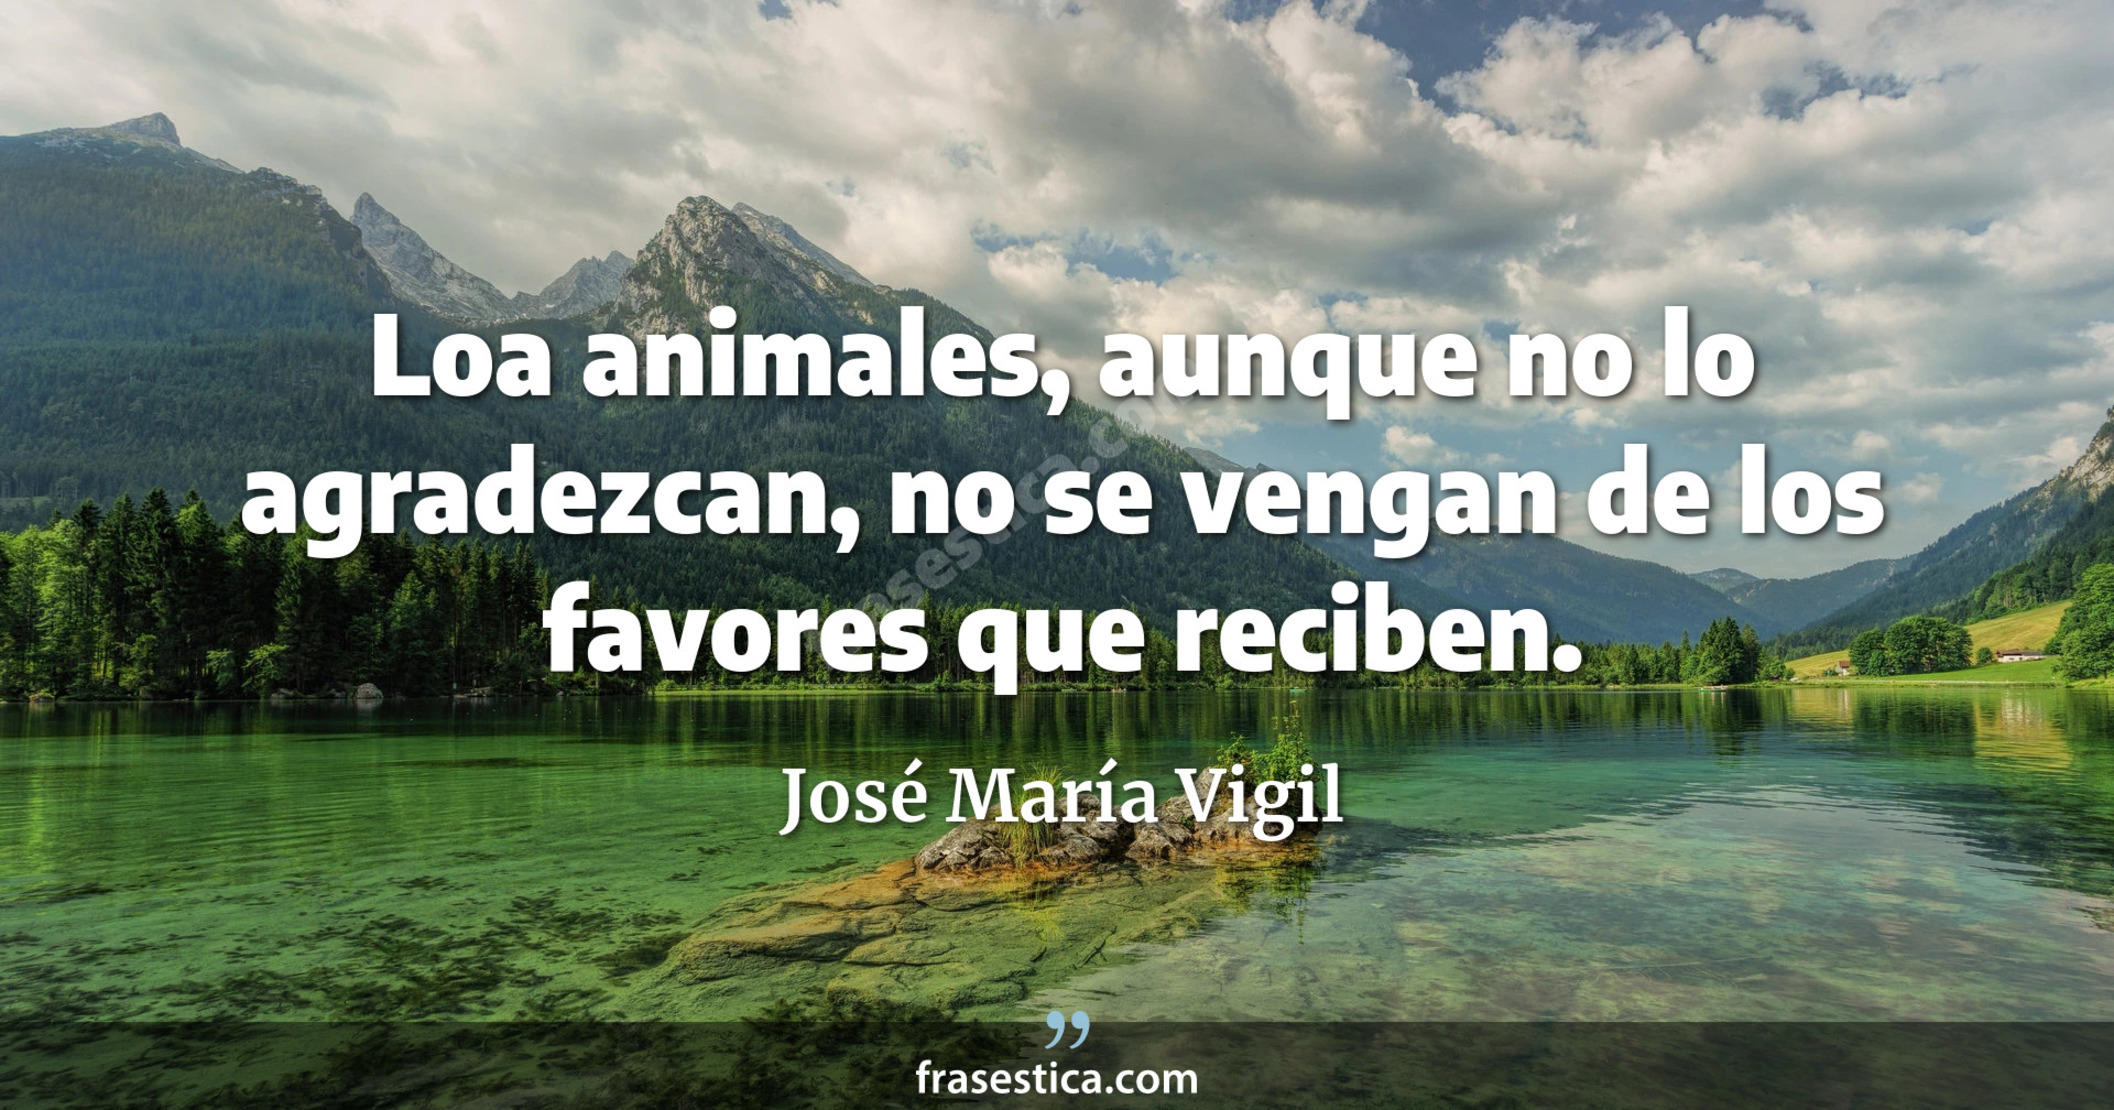 Loa animales, aunque no lo agradezcan, no se vengan de los favores que reciben. - José María Vigil